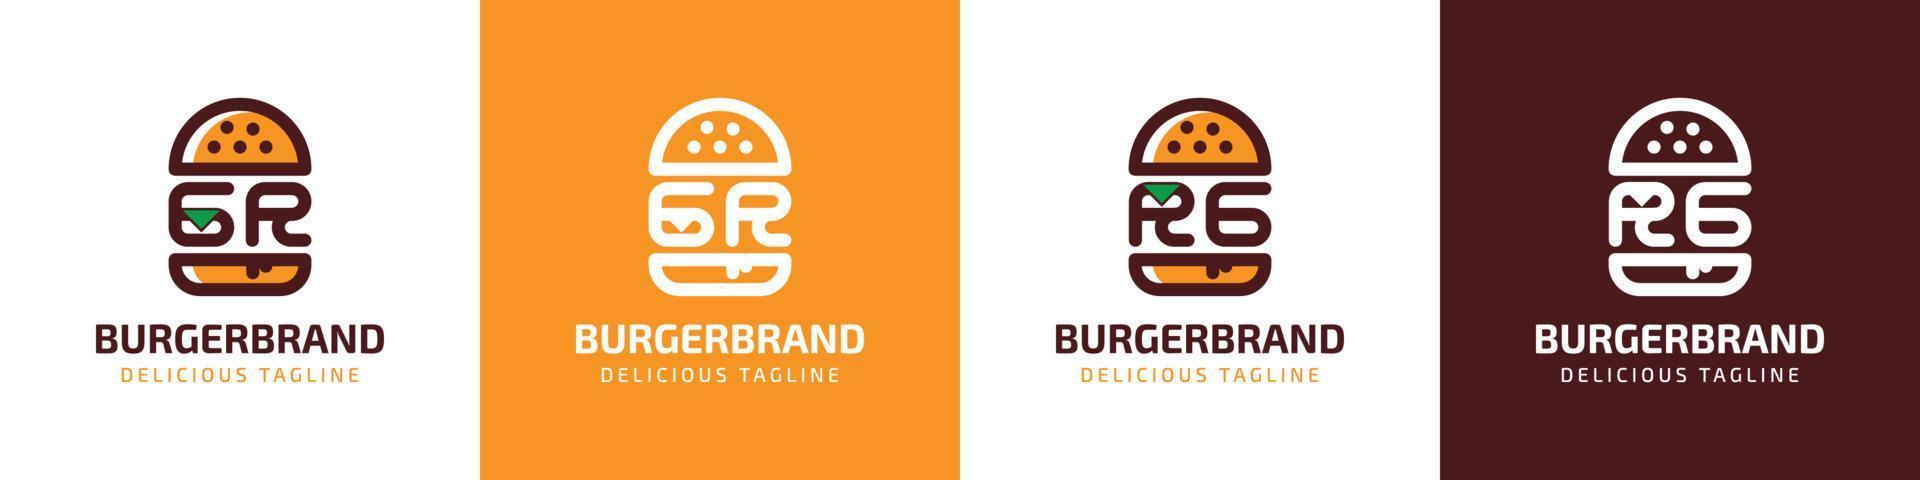 letra gramo y rg hamburguesa logo, adecuado para ninguna negocio relacionado a hamburguesa con gramo o rg iniciales. vector